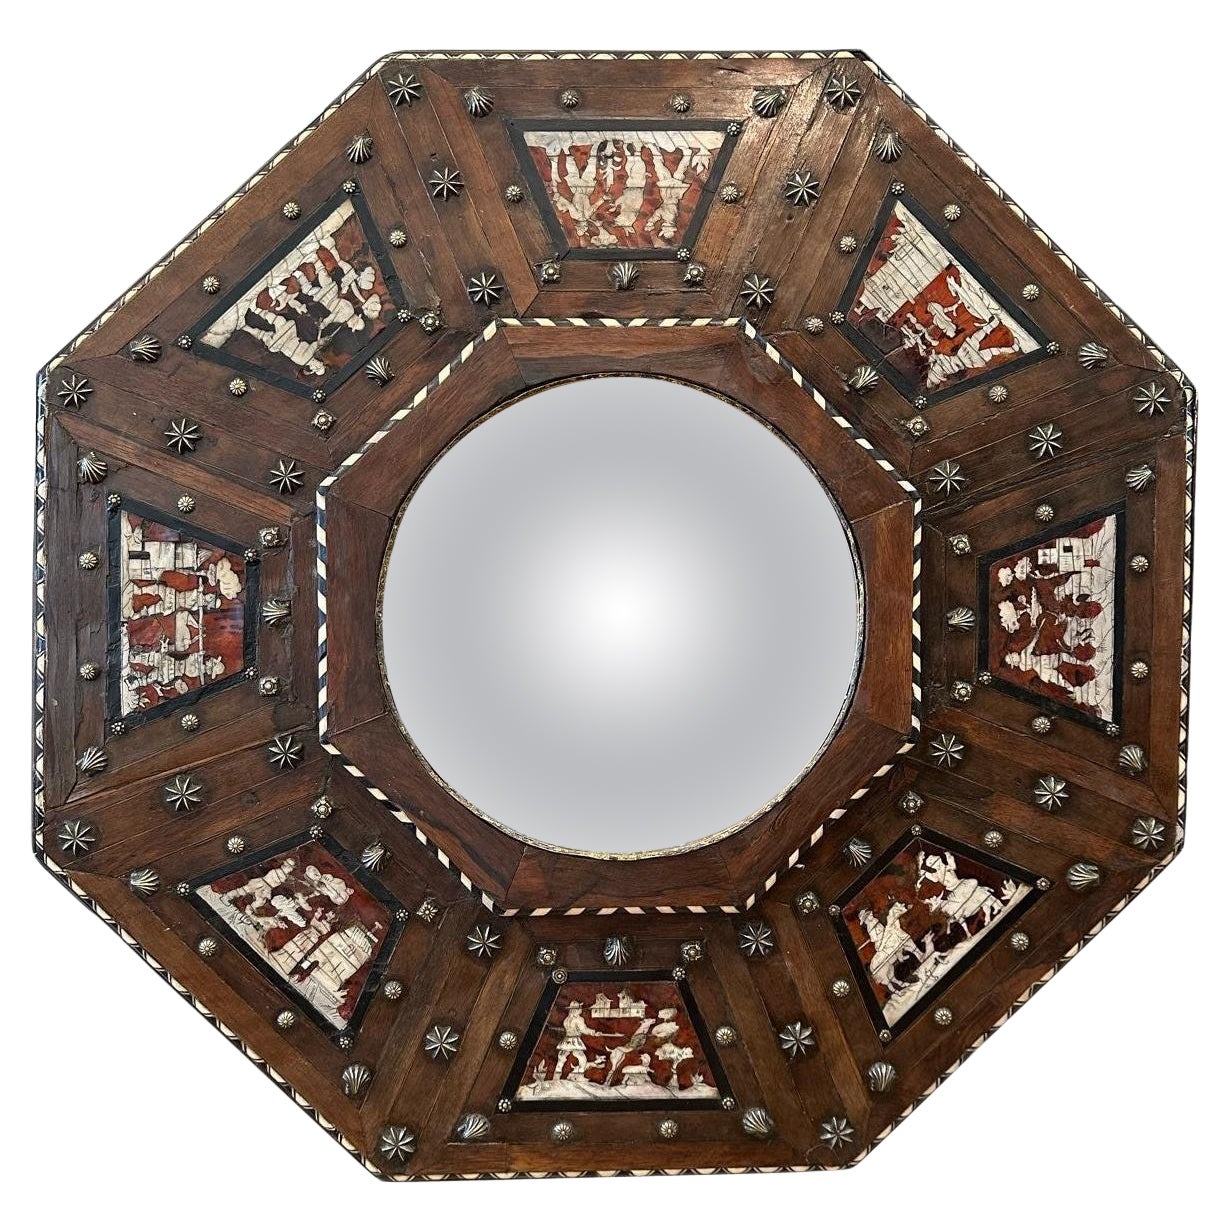 Rare miroir octogonal baroque du 17ème siècle avec cadre en bois incrusté